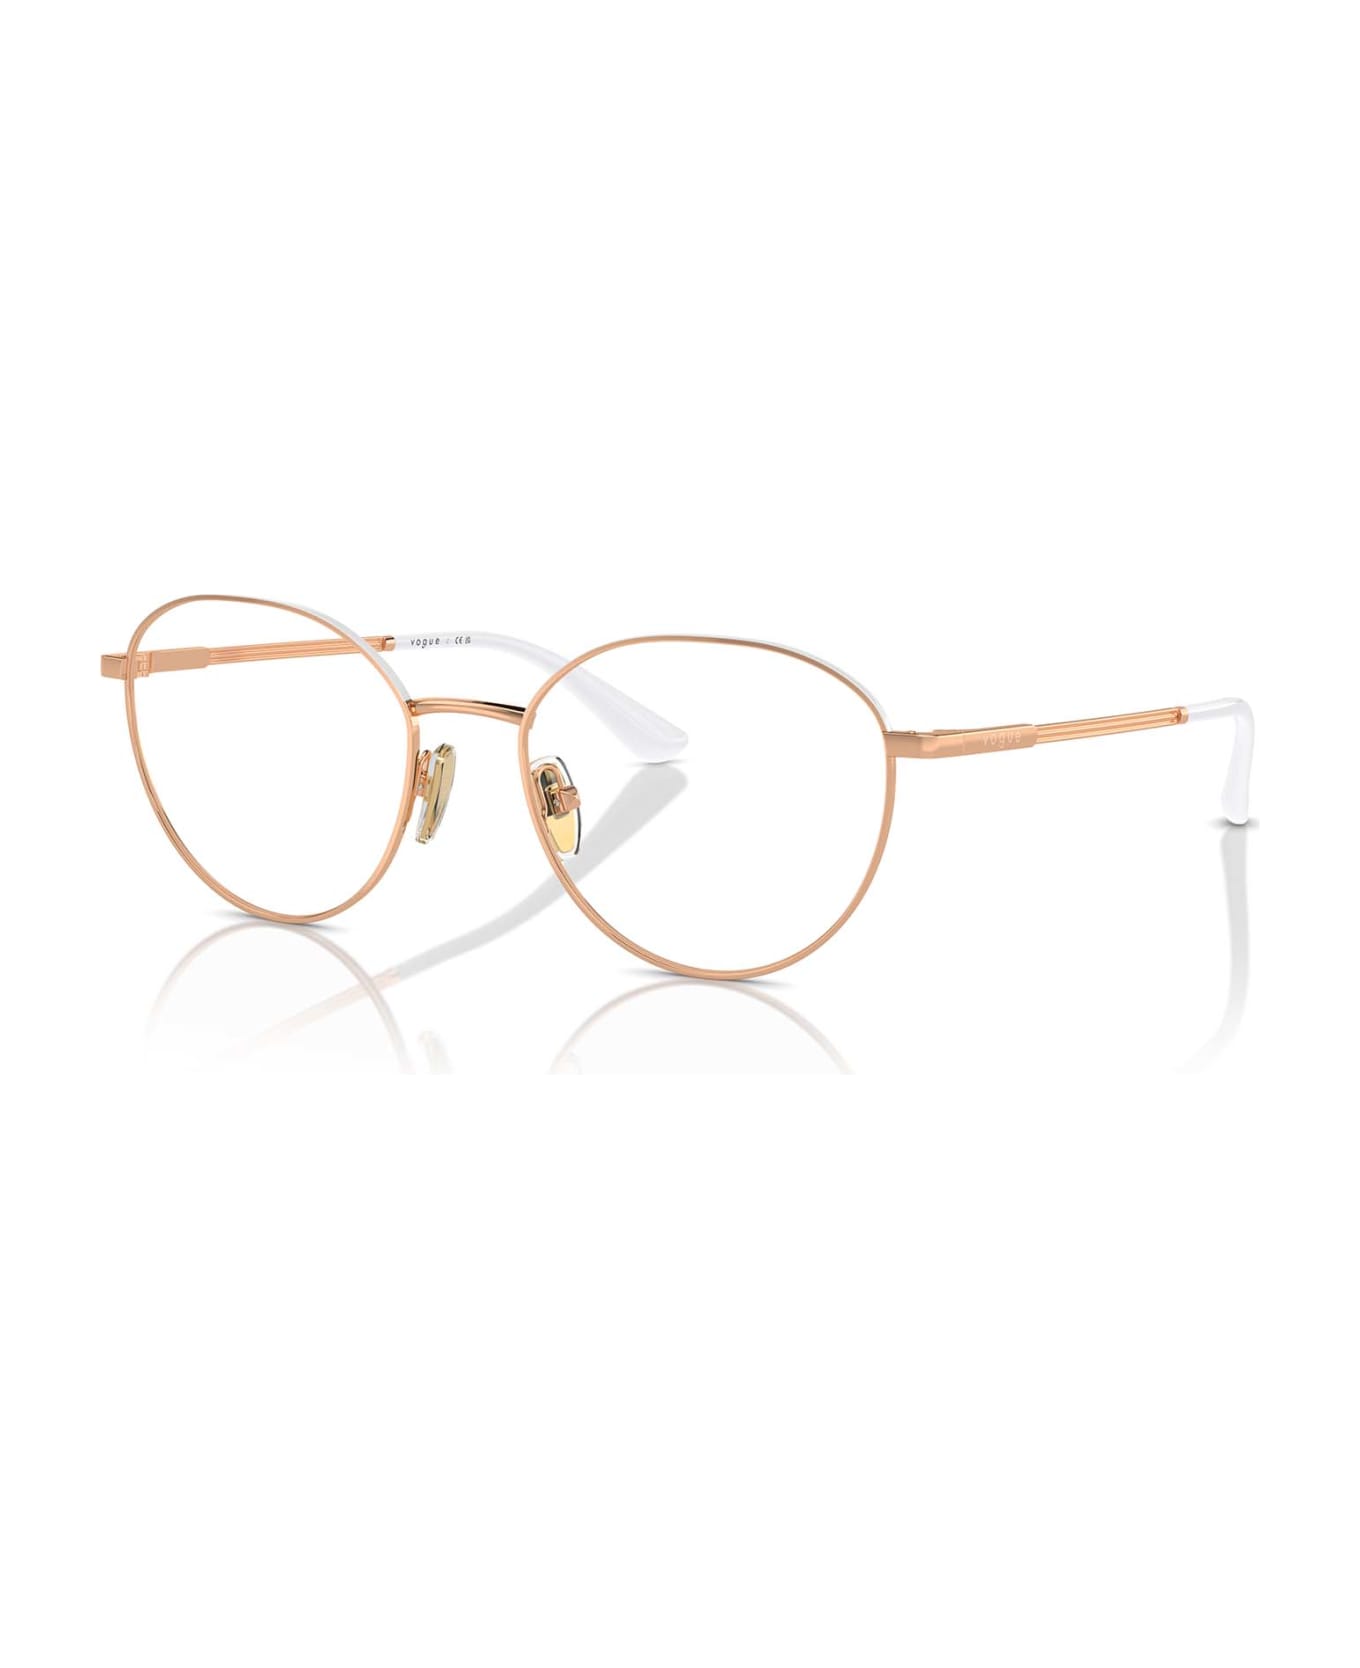 Vogue Eyewear Vo4306 Rose Gold / Top White Glasses - Rose Gold / Top White